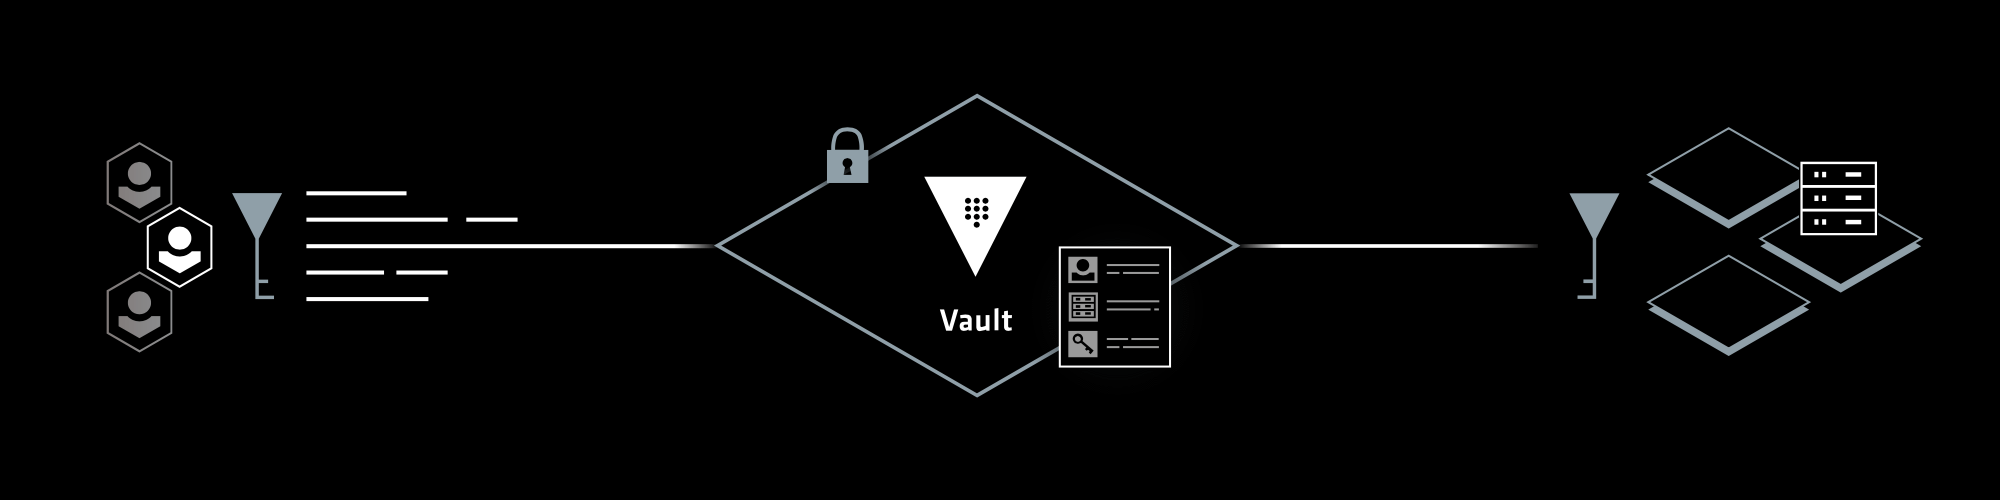 Stylized HashiCorp Vault diagram